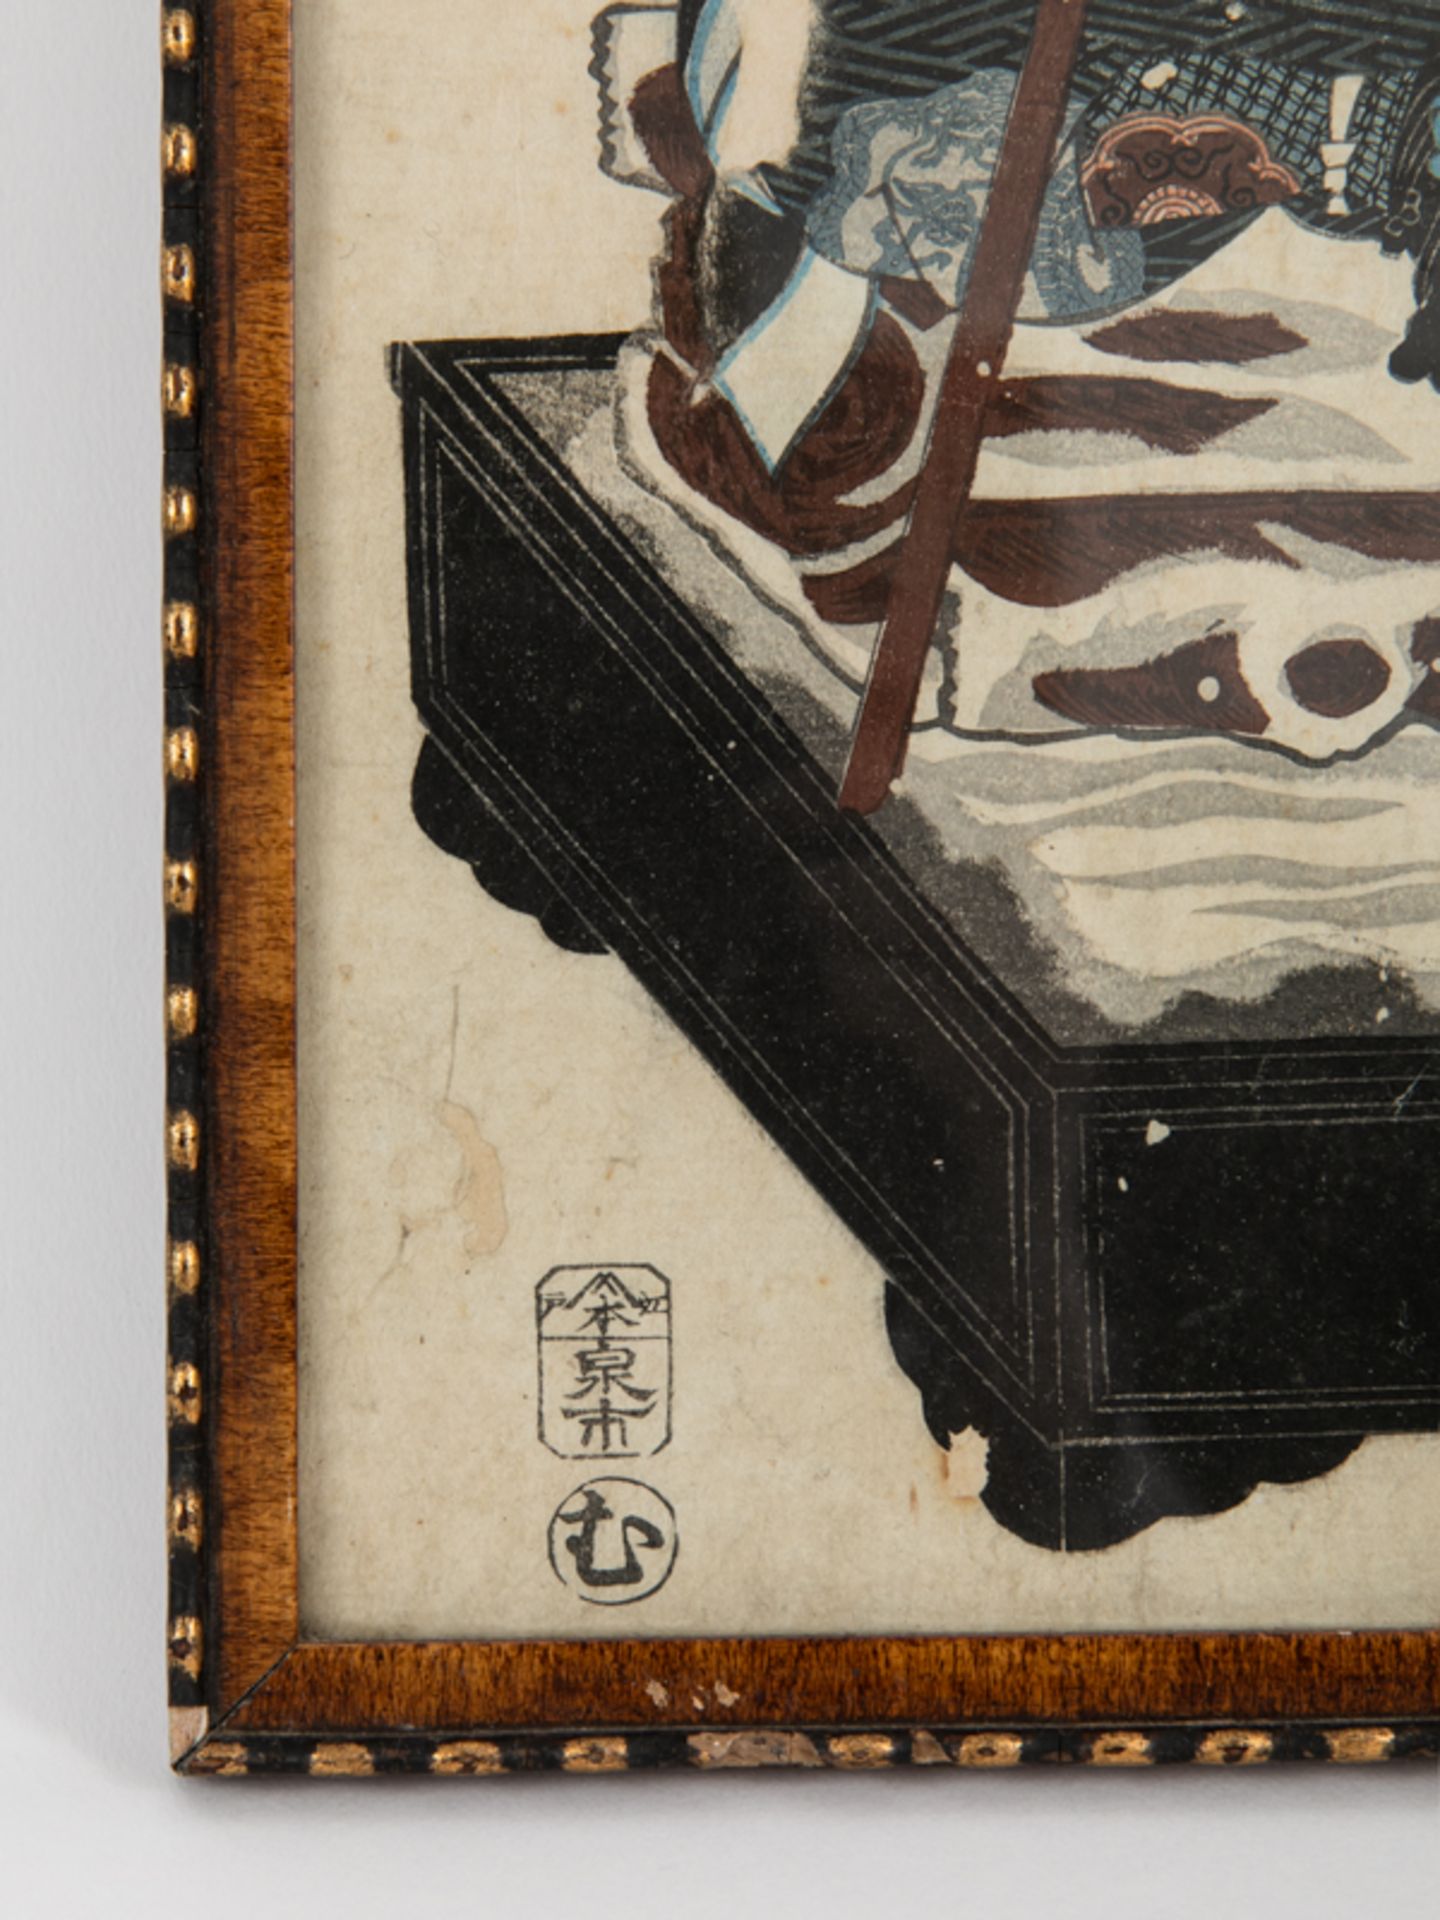 Farbholzschnitt, Japan, um 1900. Auf einem Podium stehender Samurai. Umlaufende Schriftzeichen. - Bild 4 aus 6